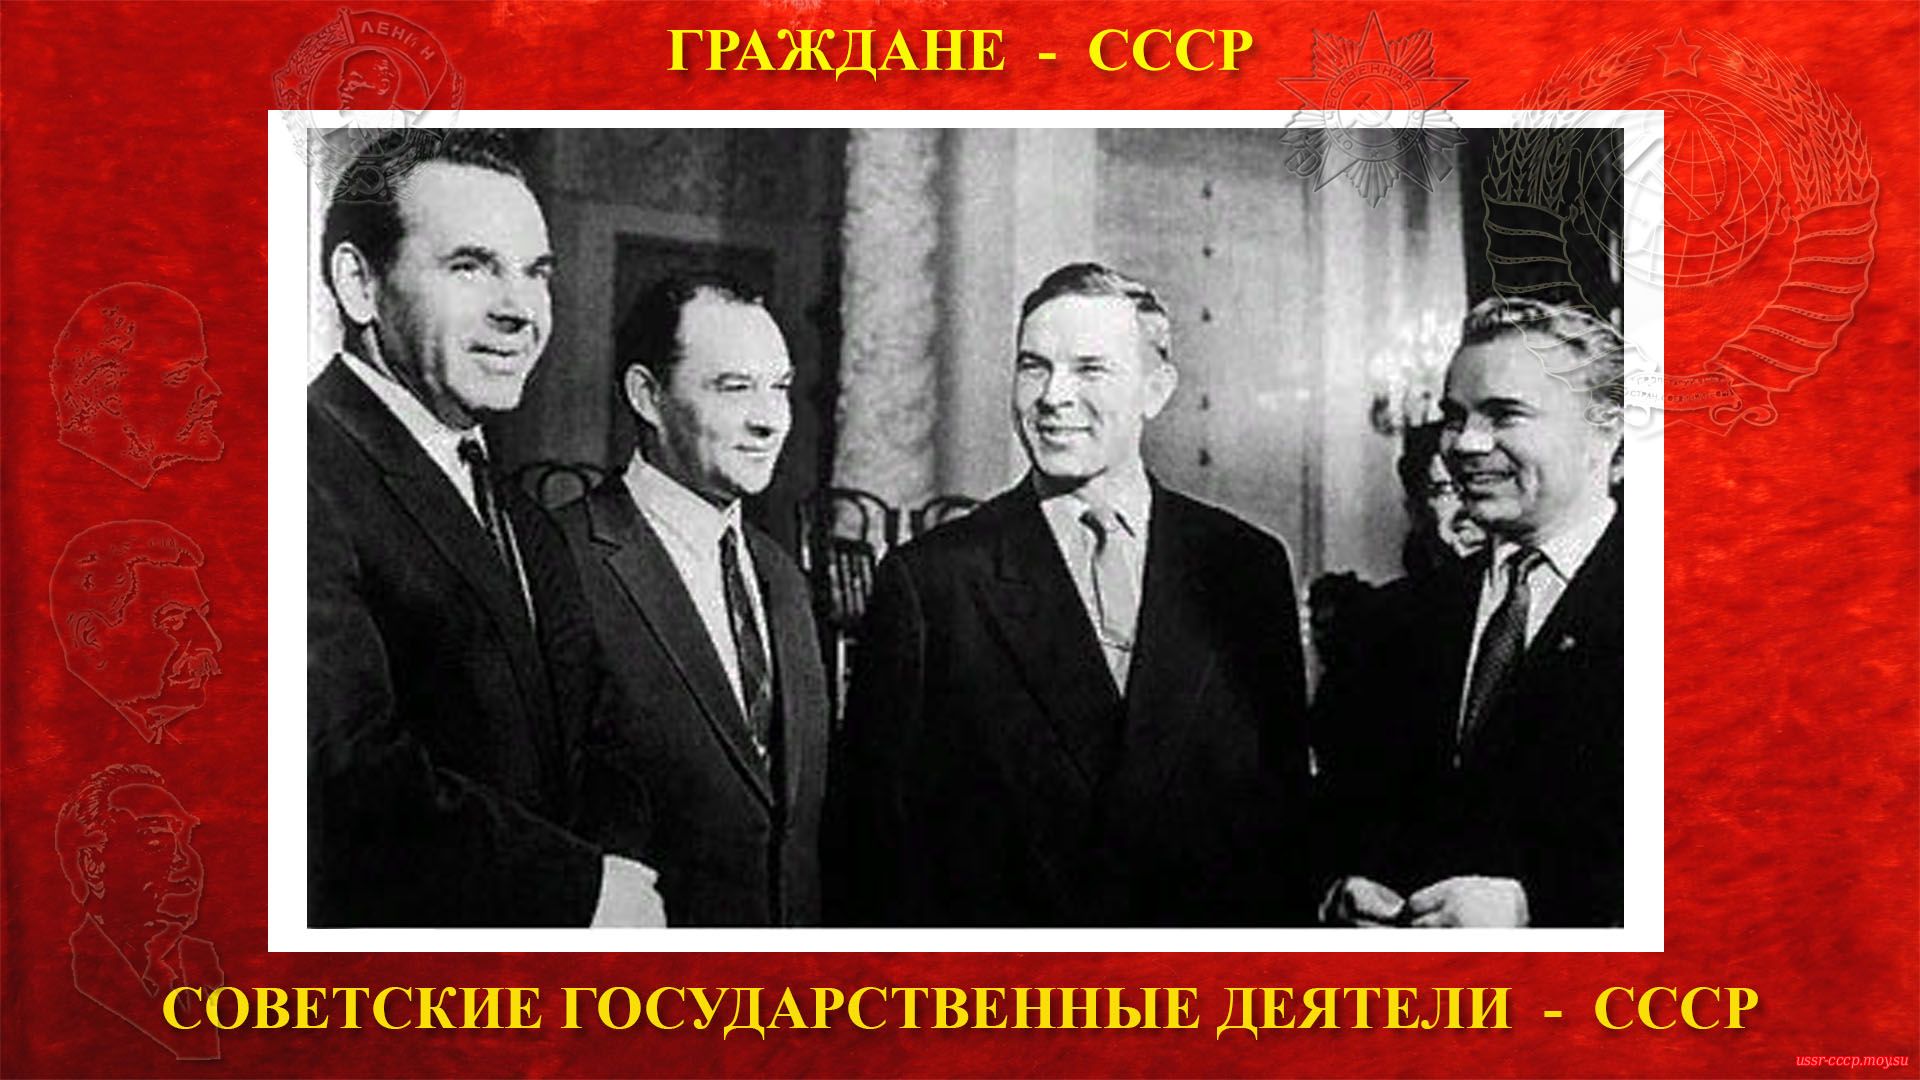 Октябрь 1961 года — слева направо: Михайлов Н.А., Шелепин А.Н., Семичастный В.Е., Павлов С.Б. на XXII съезде КПСС.